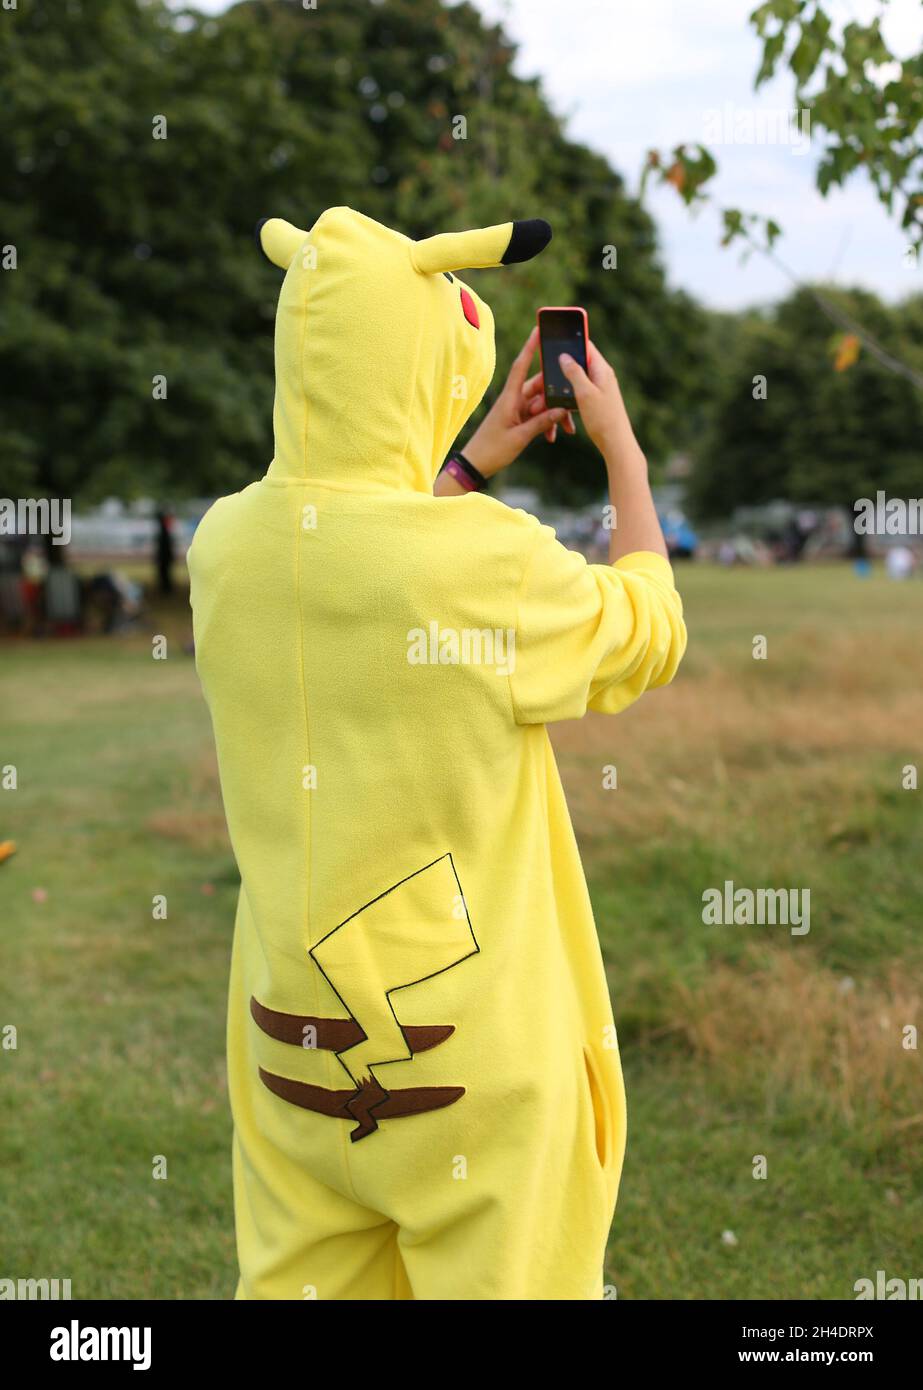 Un fan de Pokemon habillé comme personnage préféré Pikachu joue Pokemon Go sur son téléphone à Hyde Park, dans le centre de Londres, le samedi 30 juillet. Banque D'Images